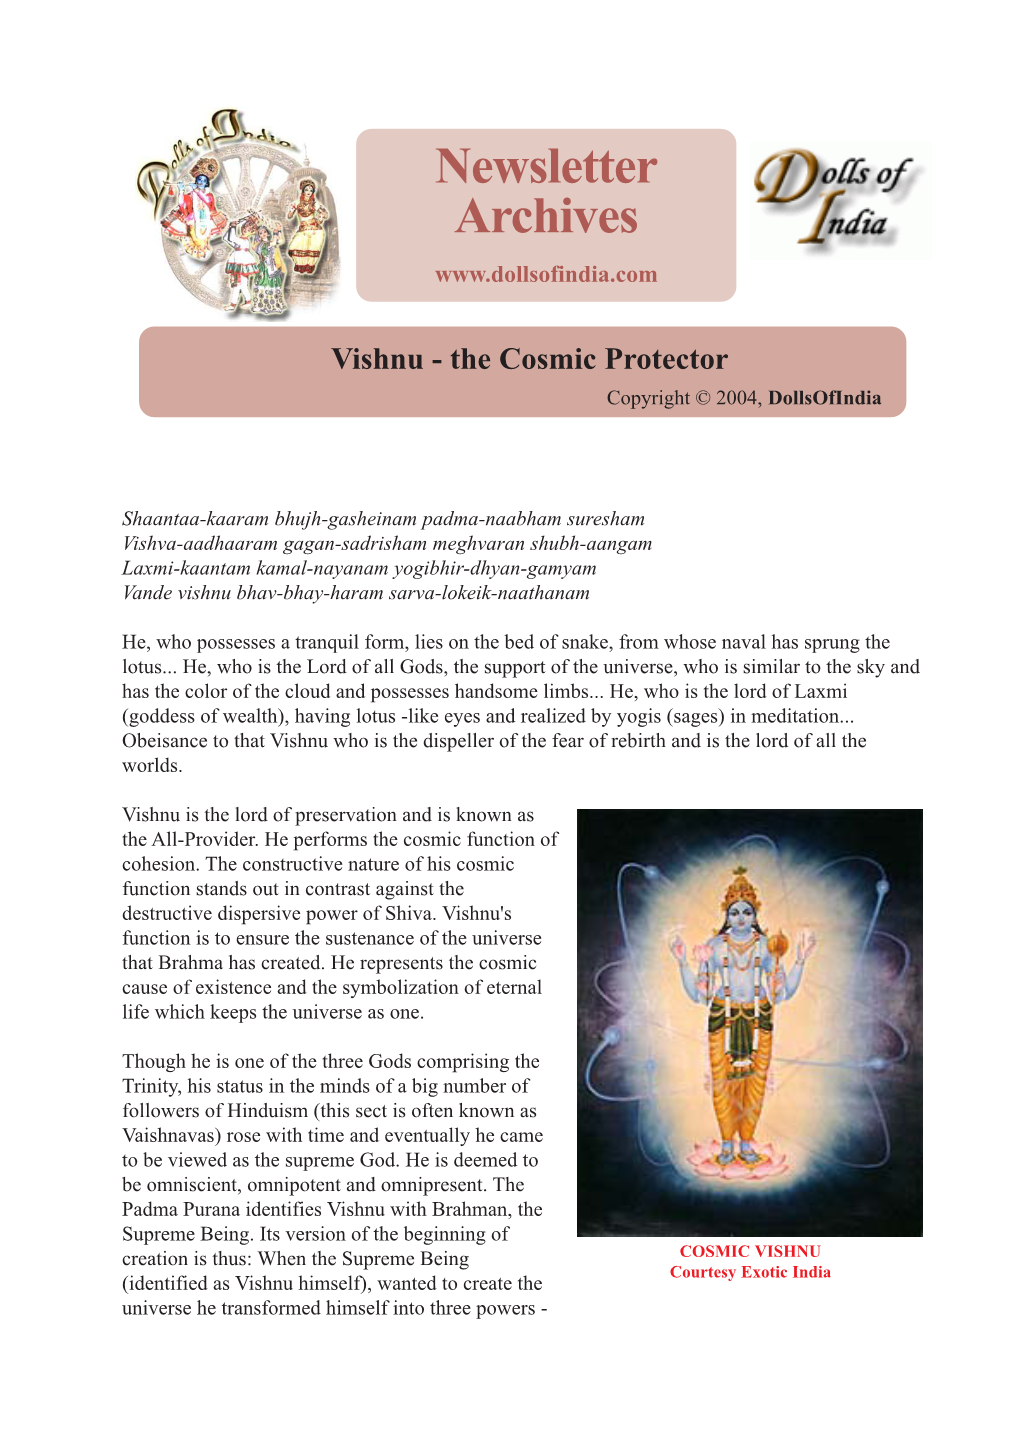 Vishnu - the Cosmic Protector Copyright © 2004, Dollsofindia